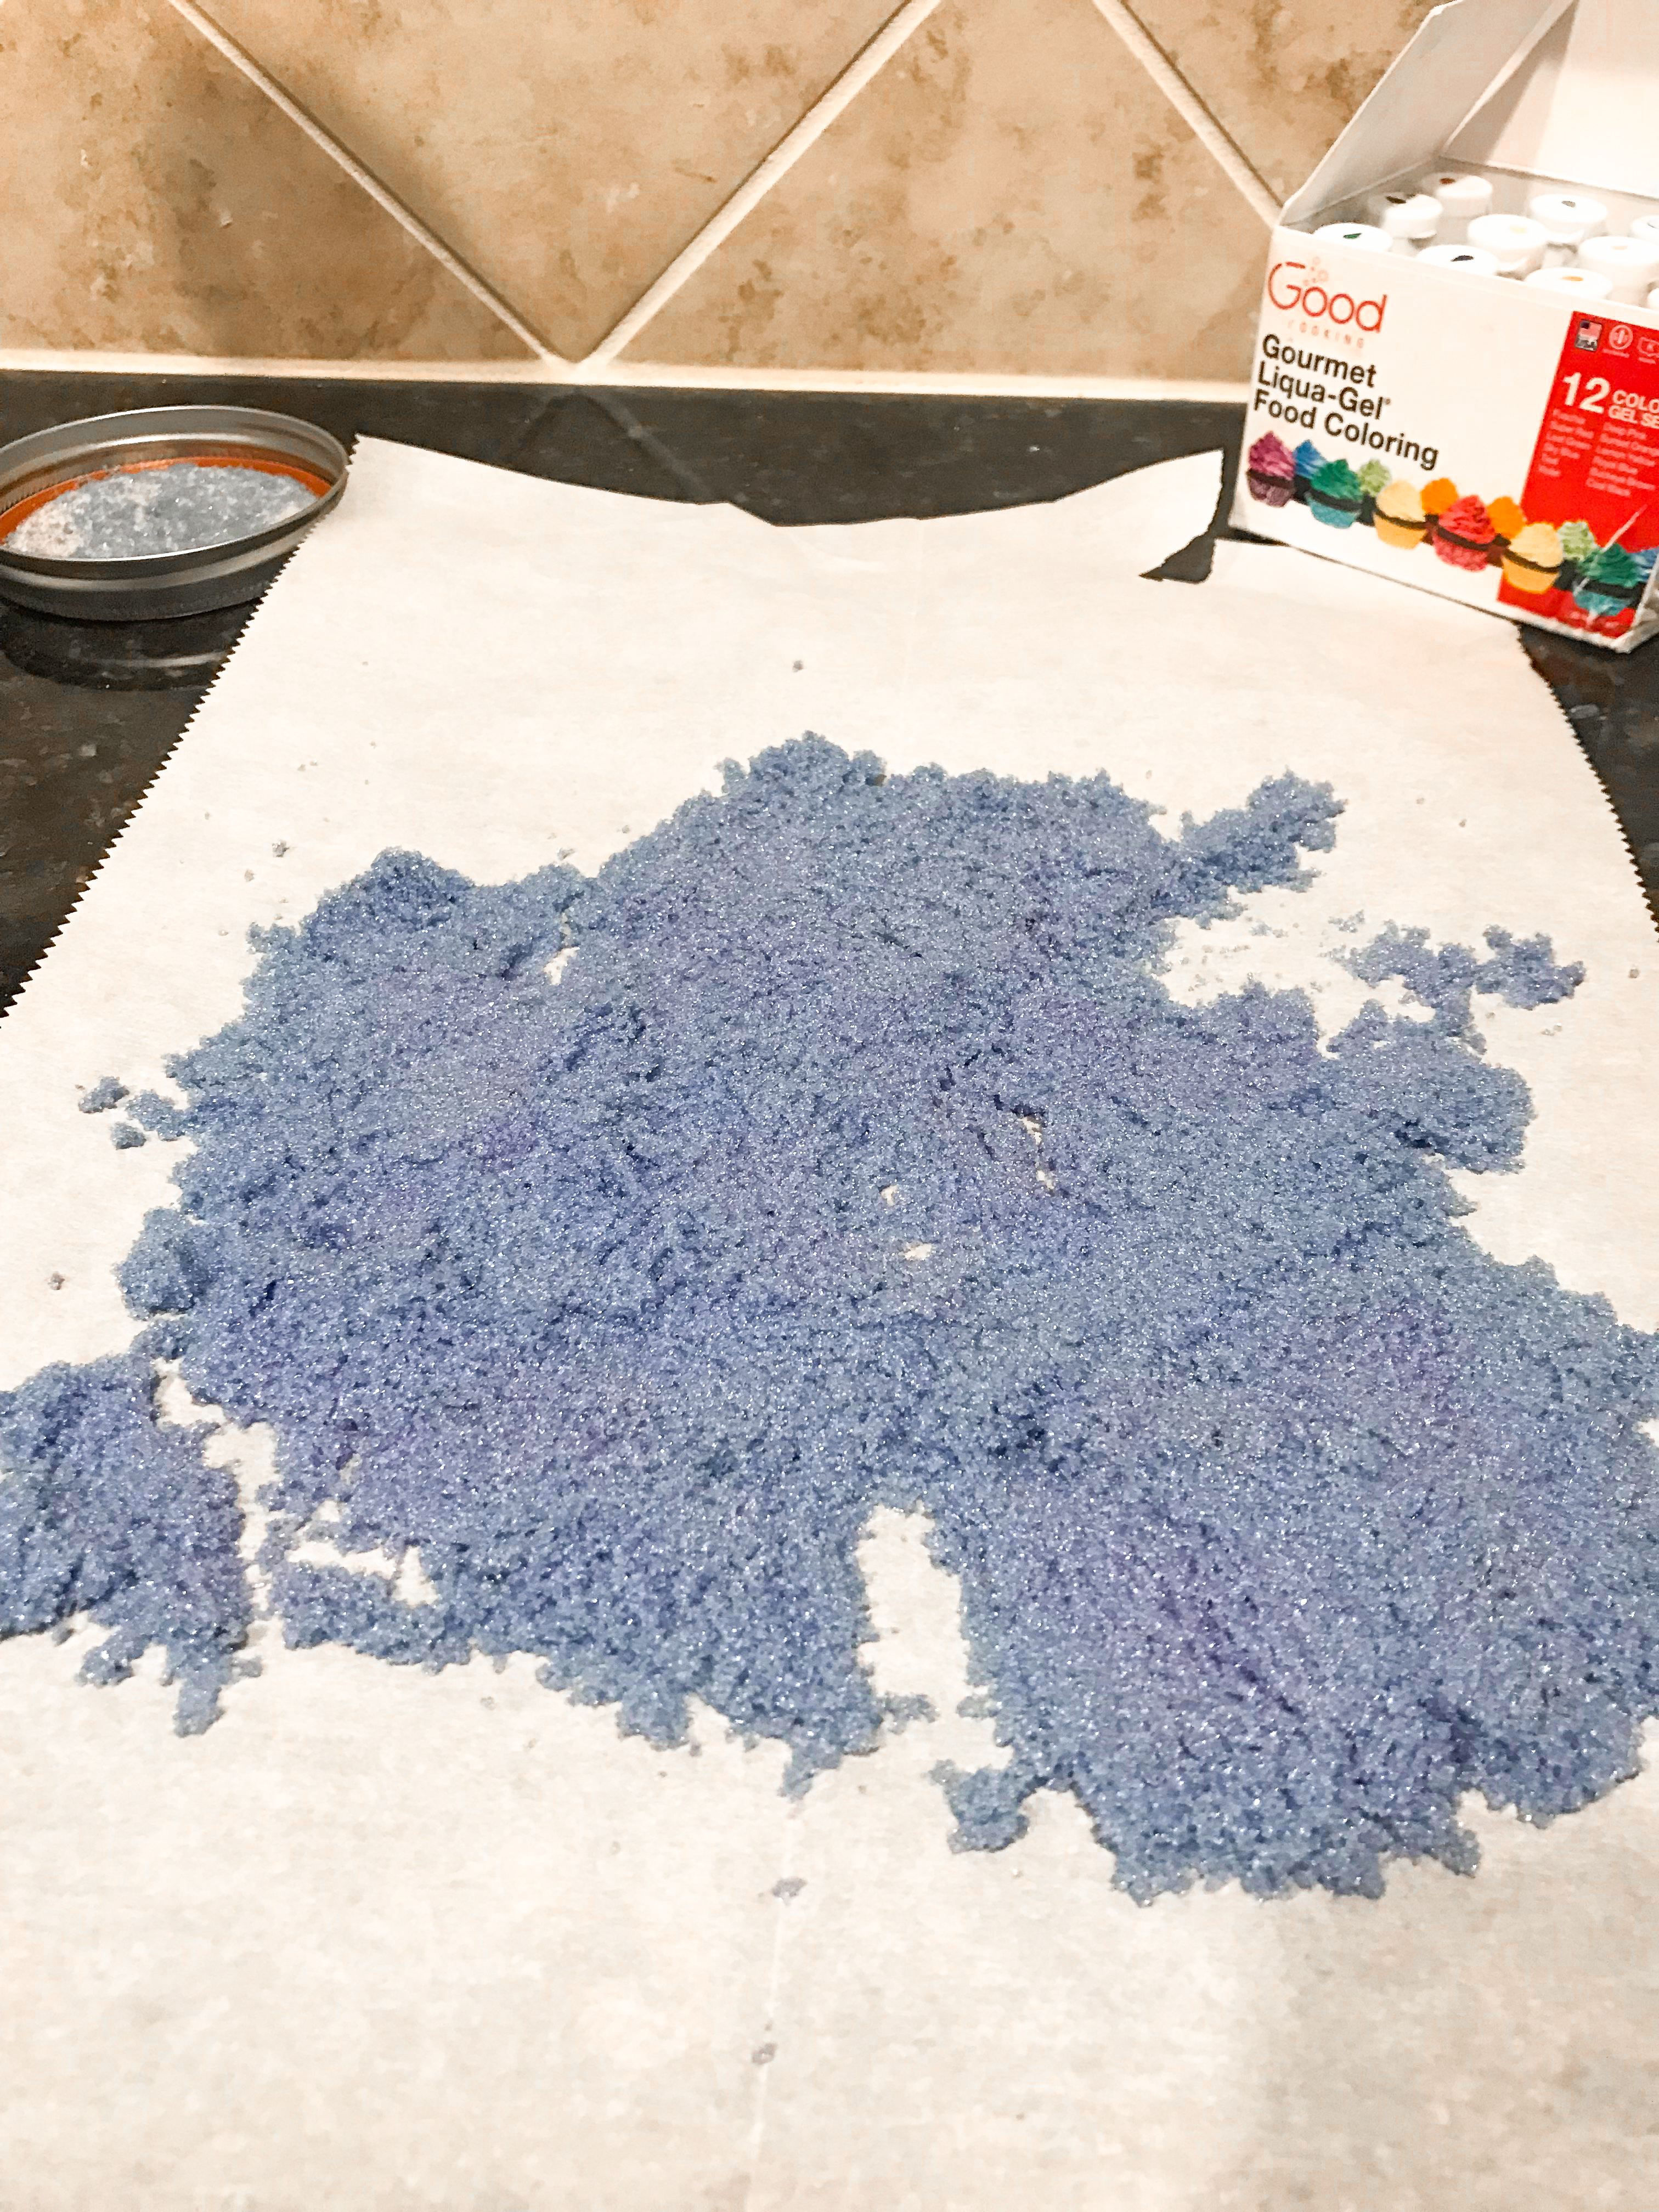 Vibrant purple sugar spread in a layer on parchment paper. 